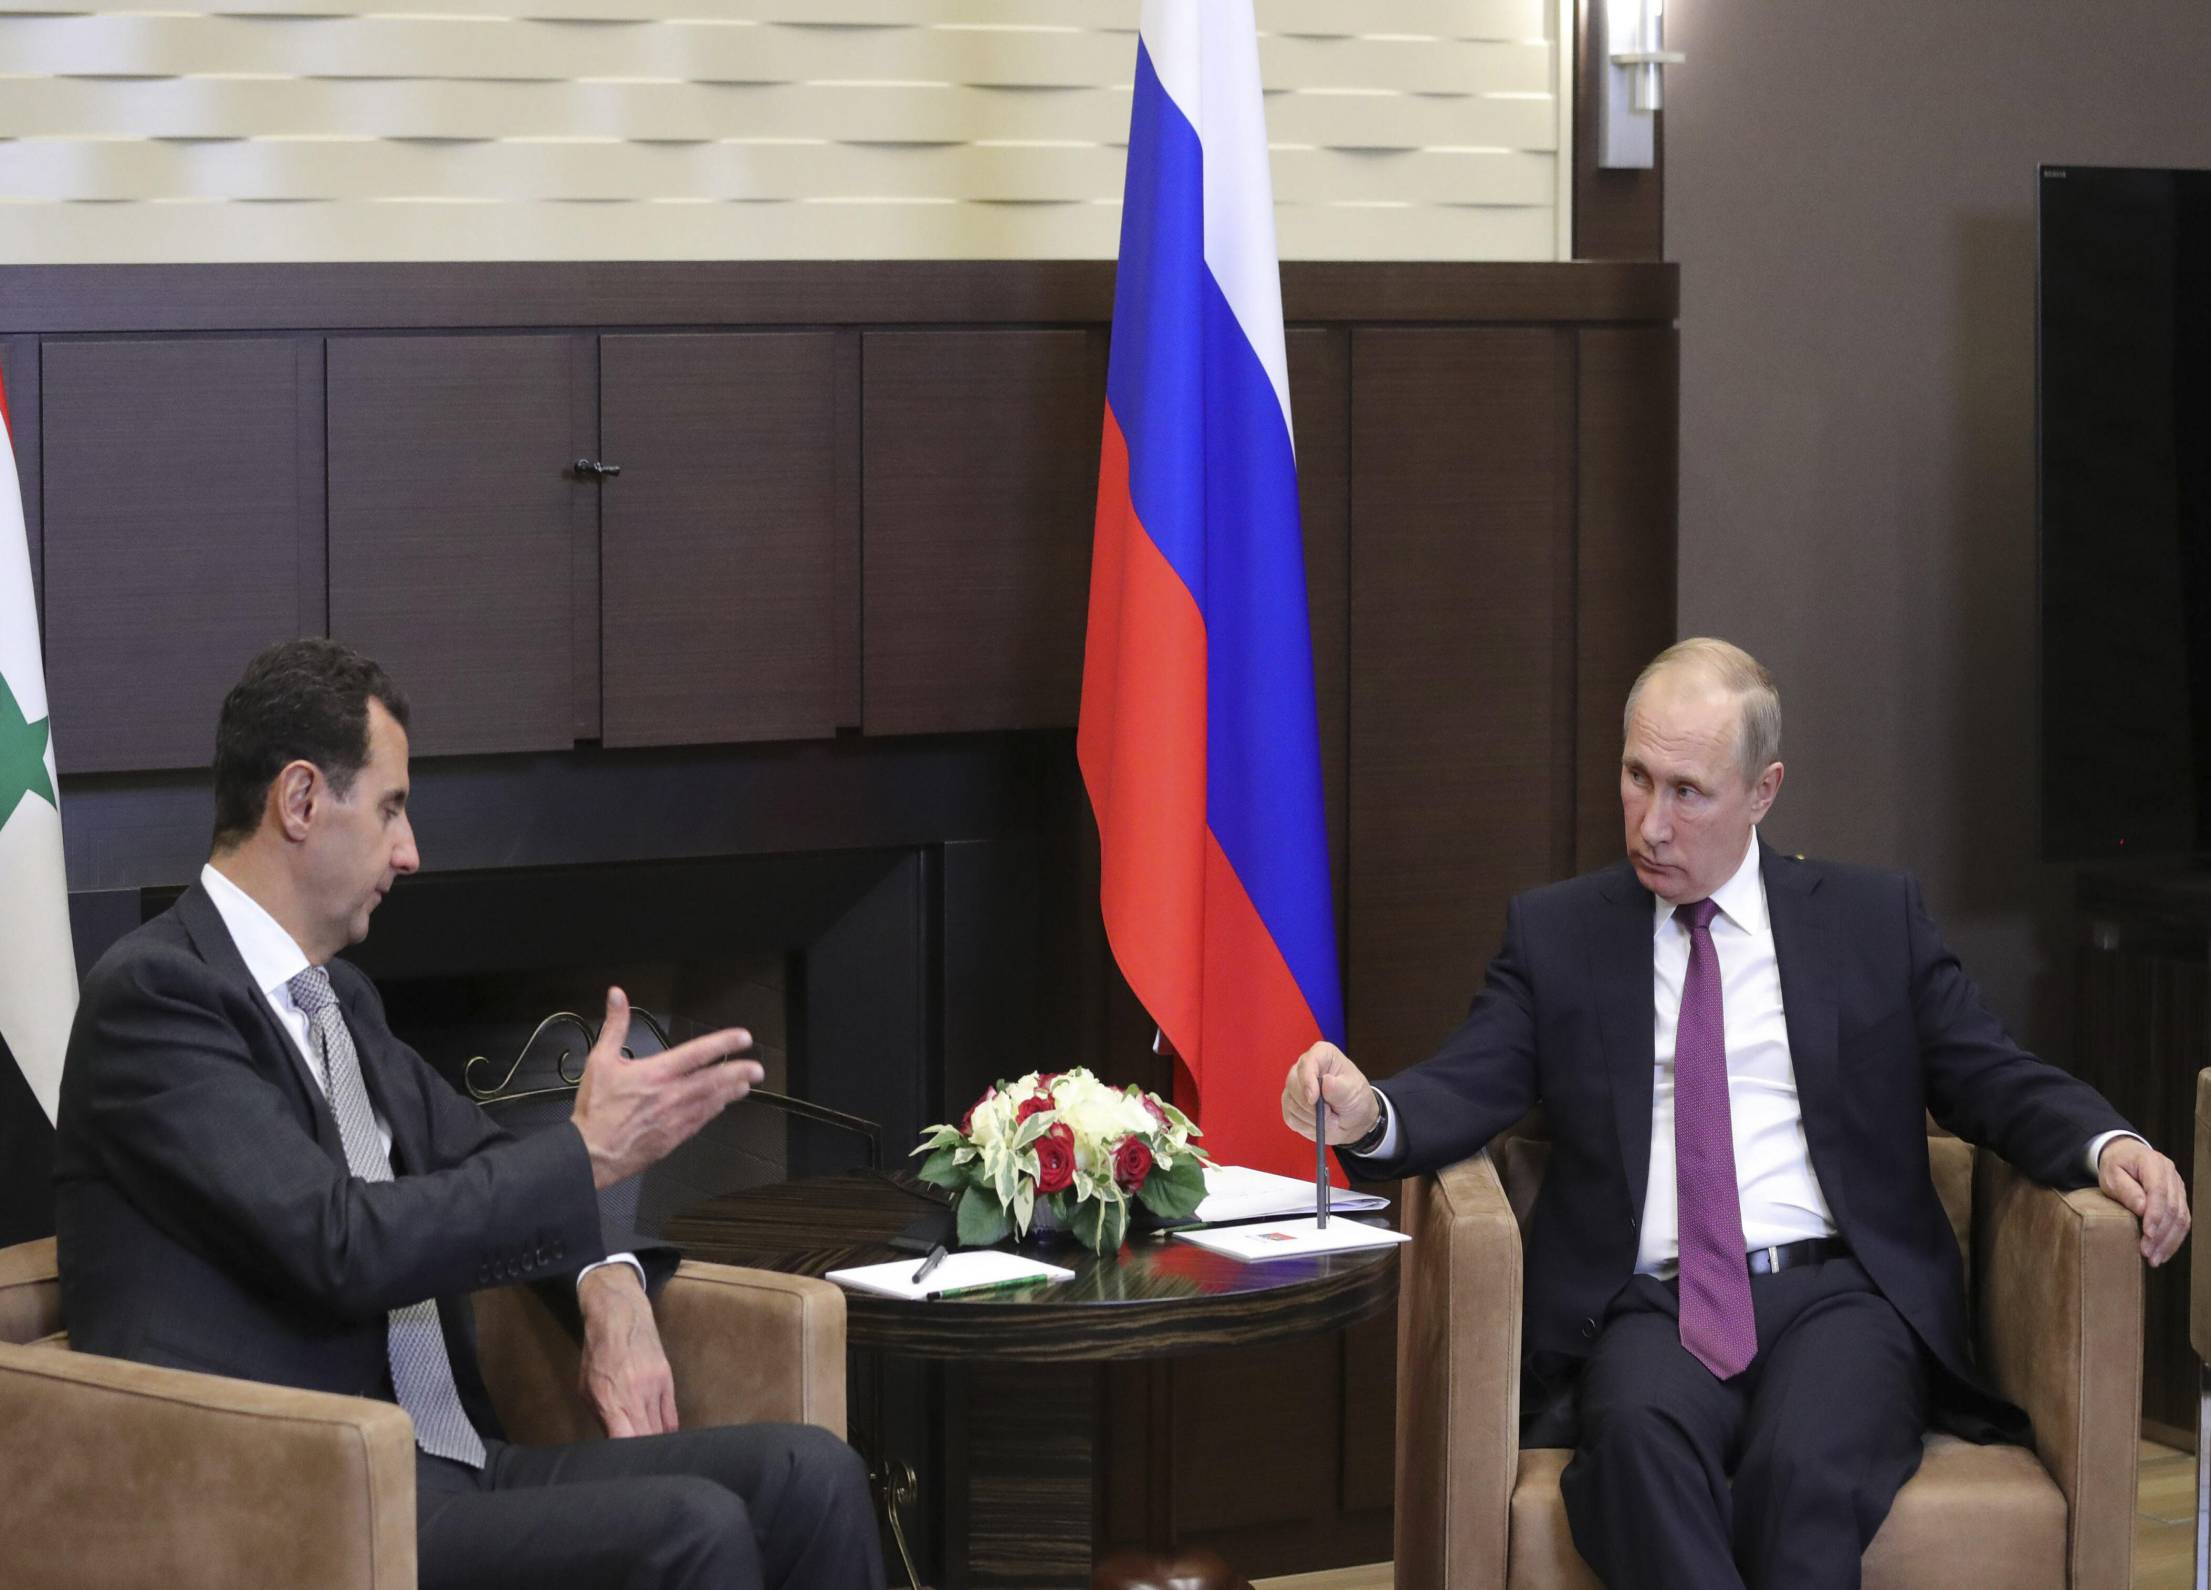 سفر اعلام نشده اسد به مسکو و دیدار با پوتین